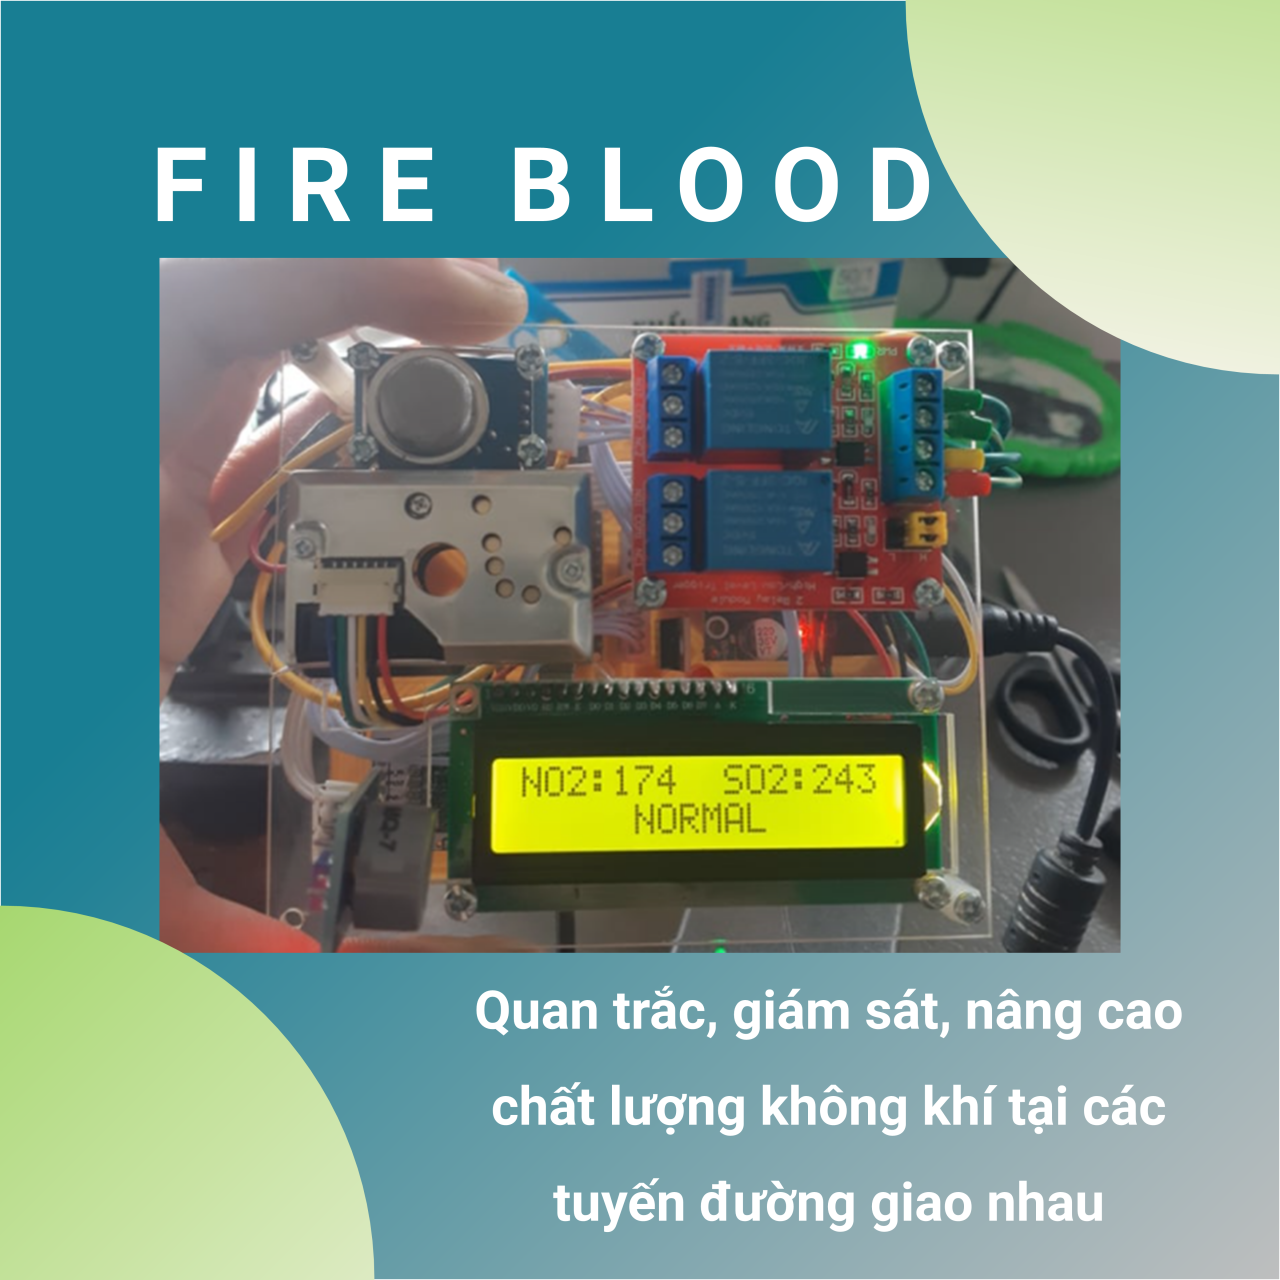 Nhóm Fire Blood - Quan trắc, giám sát, nâng cao chất lượng không khí tại các tuyến đường giao nhau